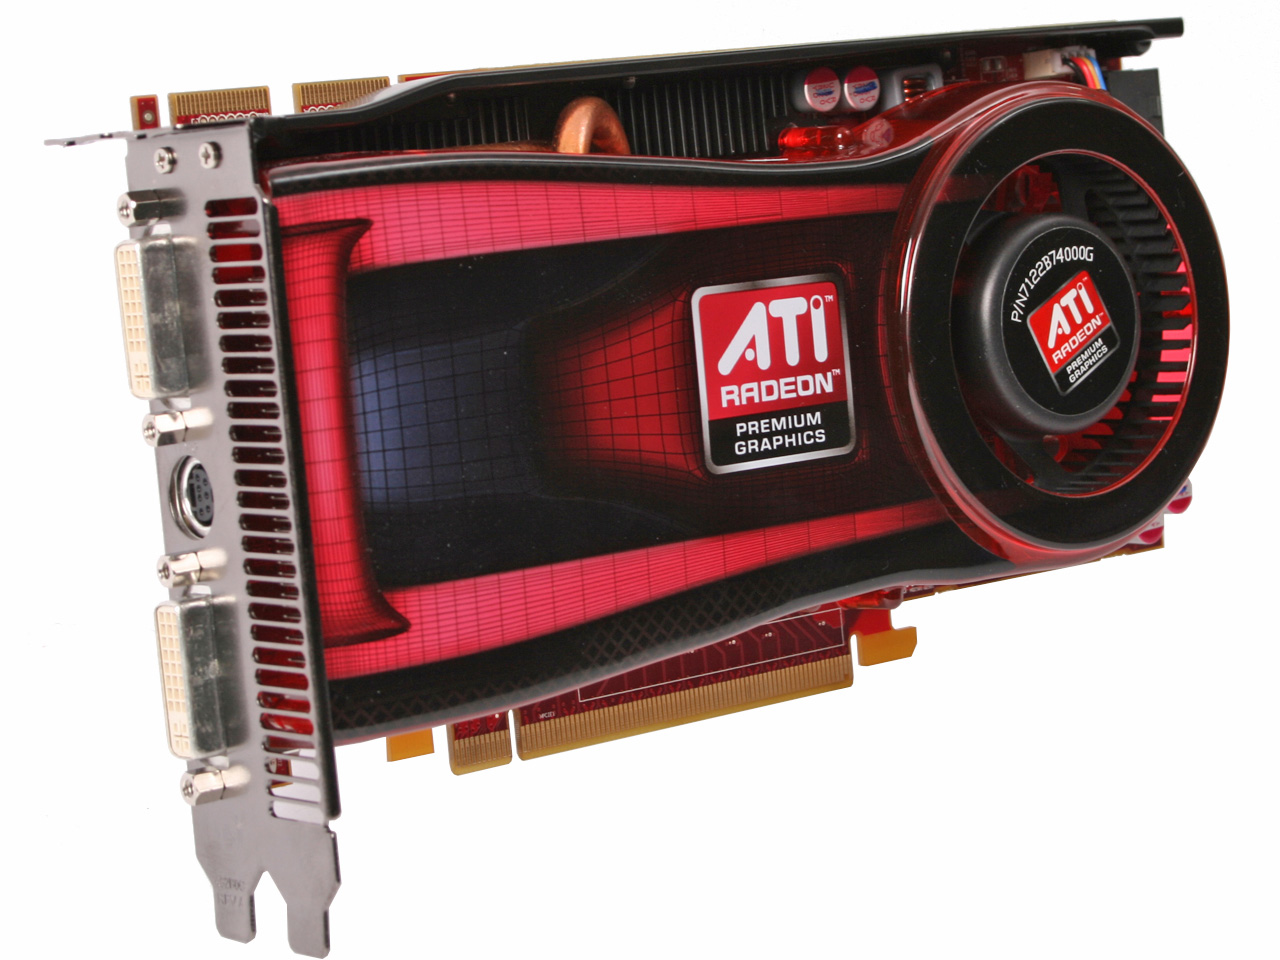 Видеокарта на английском. AMD ATI Radeon.